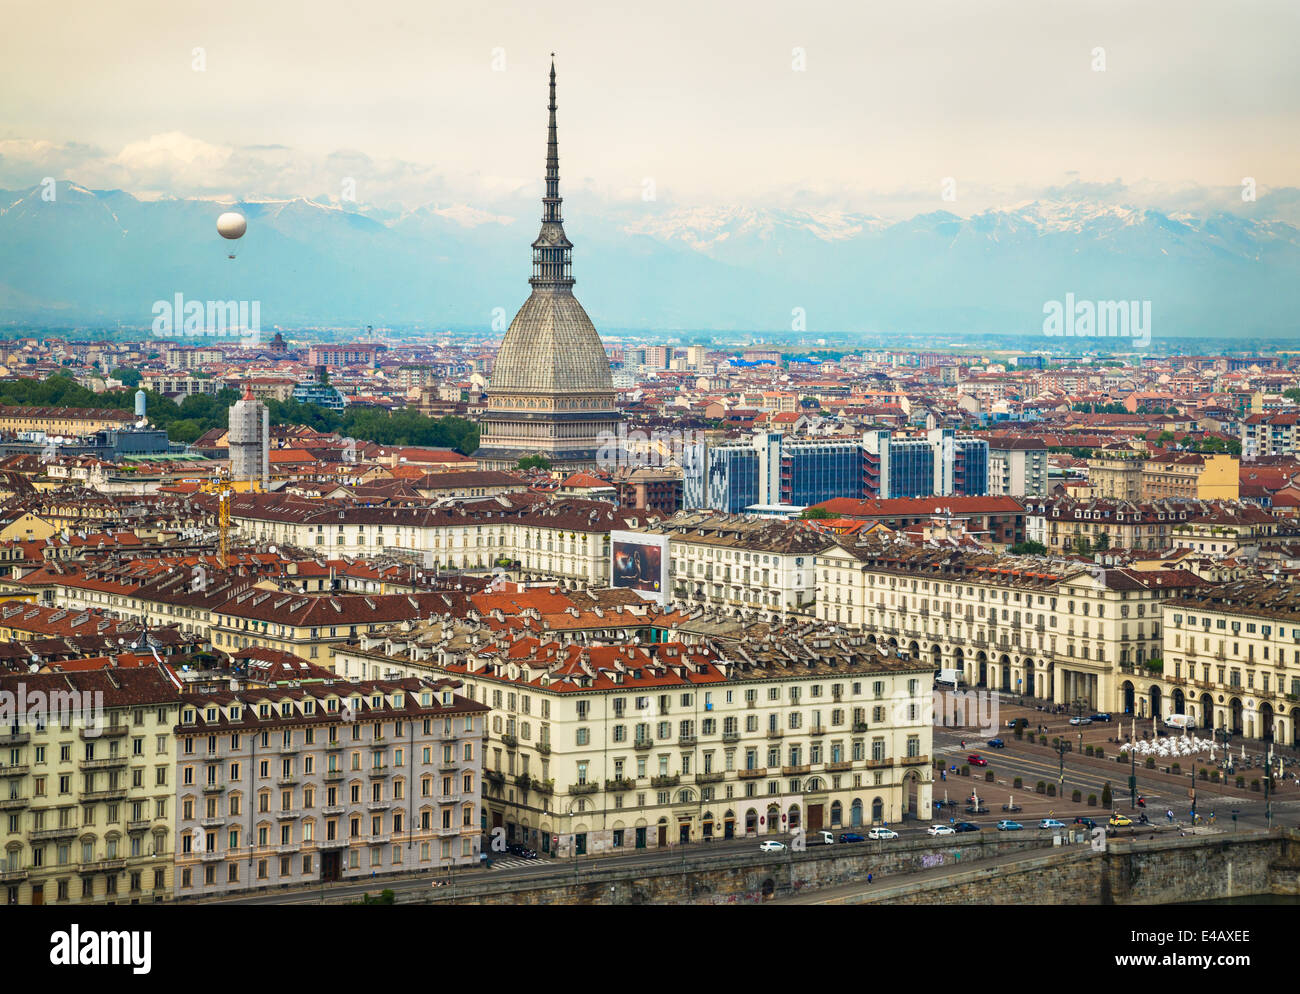 Blick auf die Stadt von Turin, Italien von Convento Monte dei Cappuccini und Blick über die Piazza Vittorio Veneto. Auf der linken Seite erhebt sich ein Luftballon in den Himmel. Zentrum ist der Turm der Mole Antonelliana. Die Alpen erheben sich im Hintergrund. Stockfoto